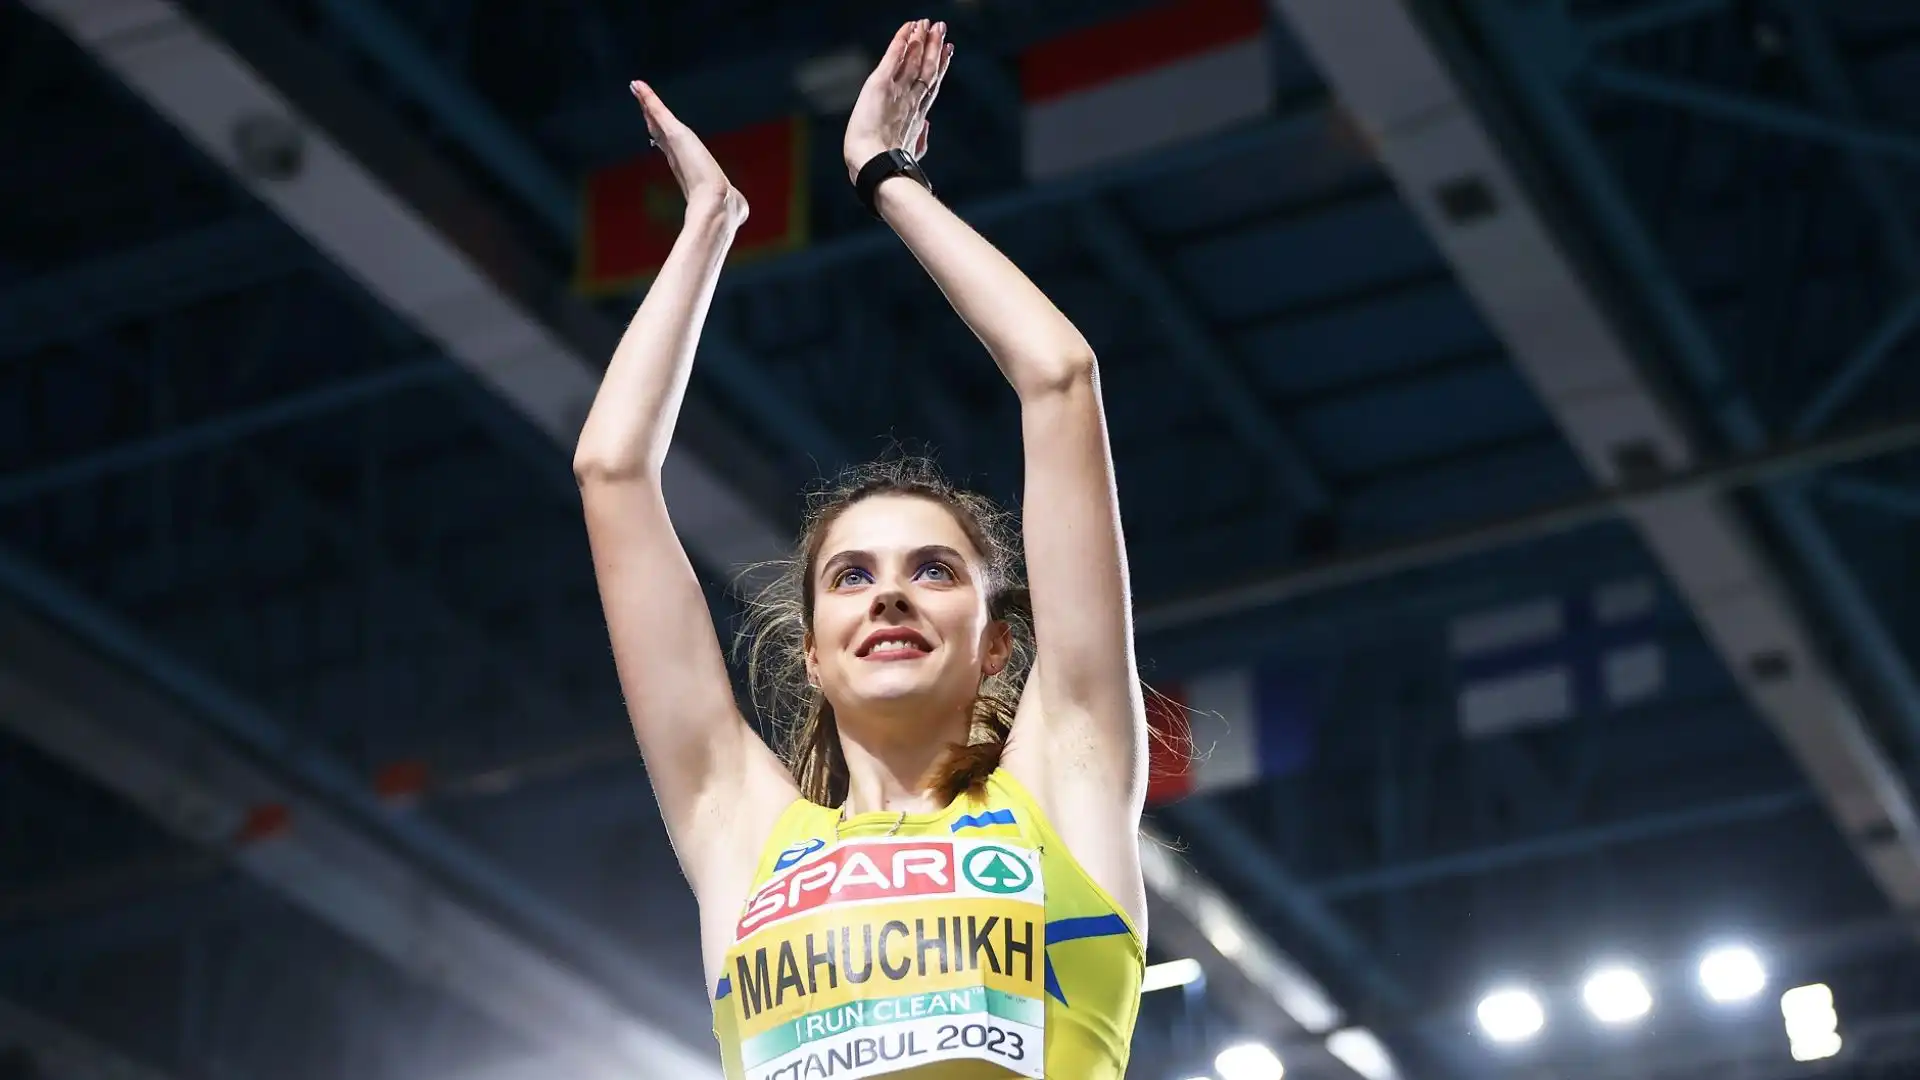 L'atleta ucraina ha vinto nel 2022 i Mondiali indoor di Belgrado